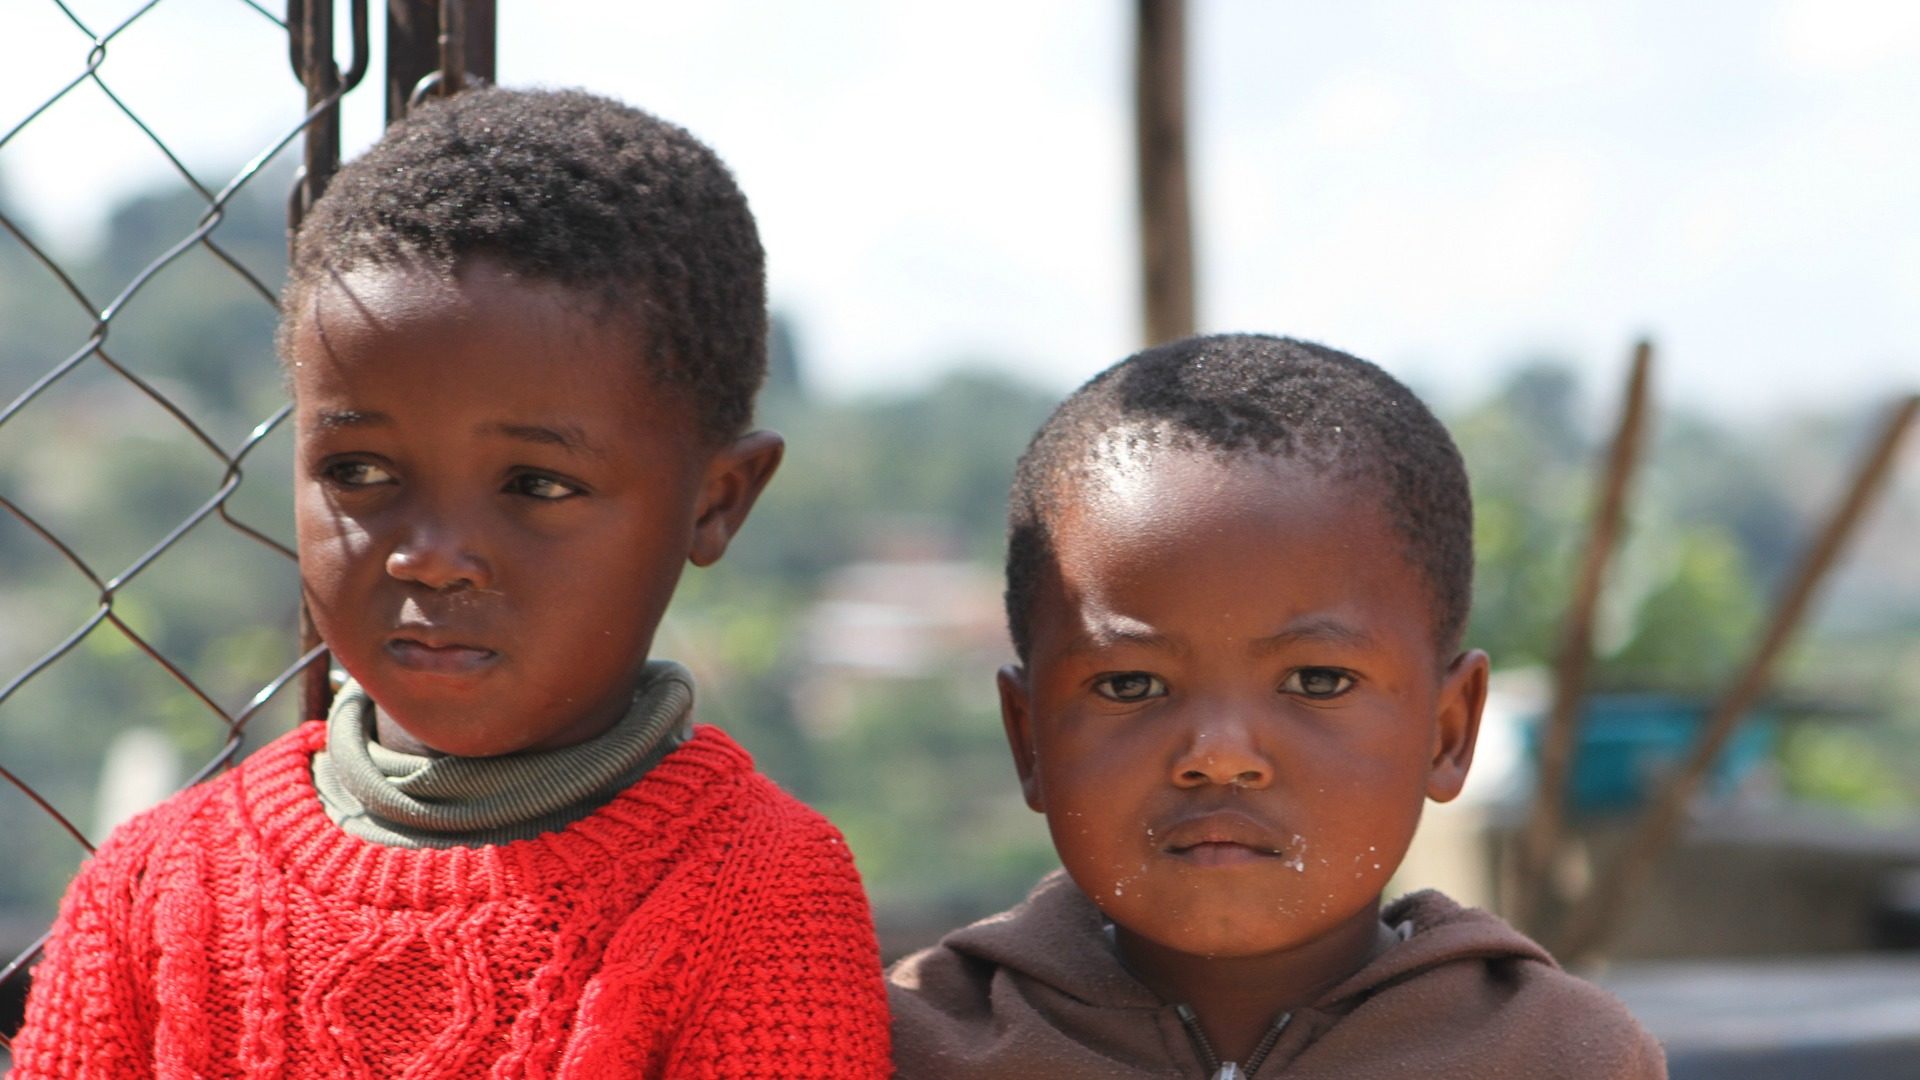 90% des habitants du Swaziland sont chrétiens (Photo: FMSC/Flickr/CC BY 2.0)